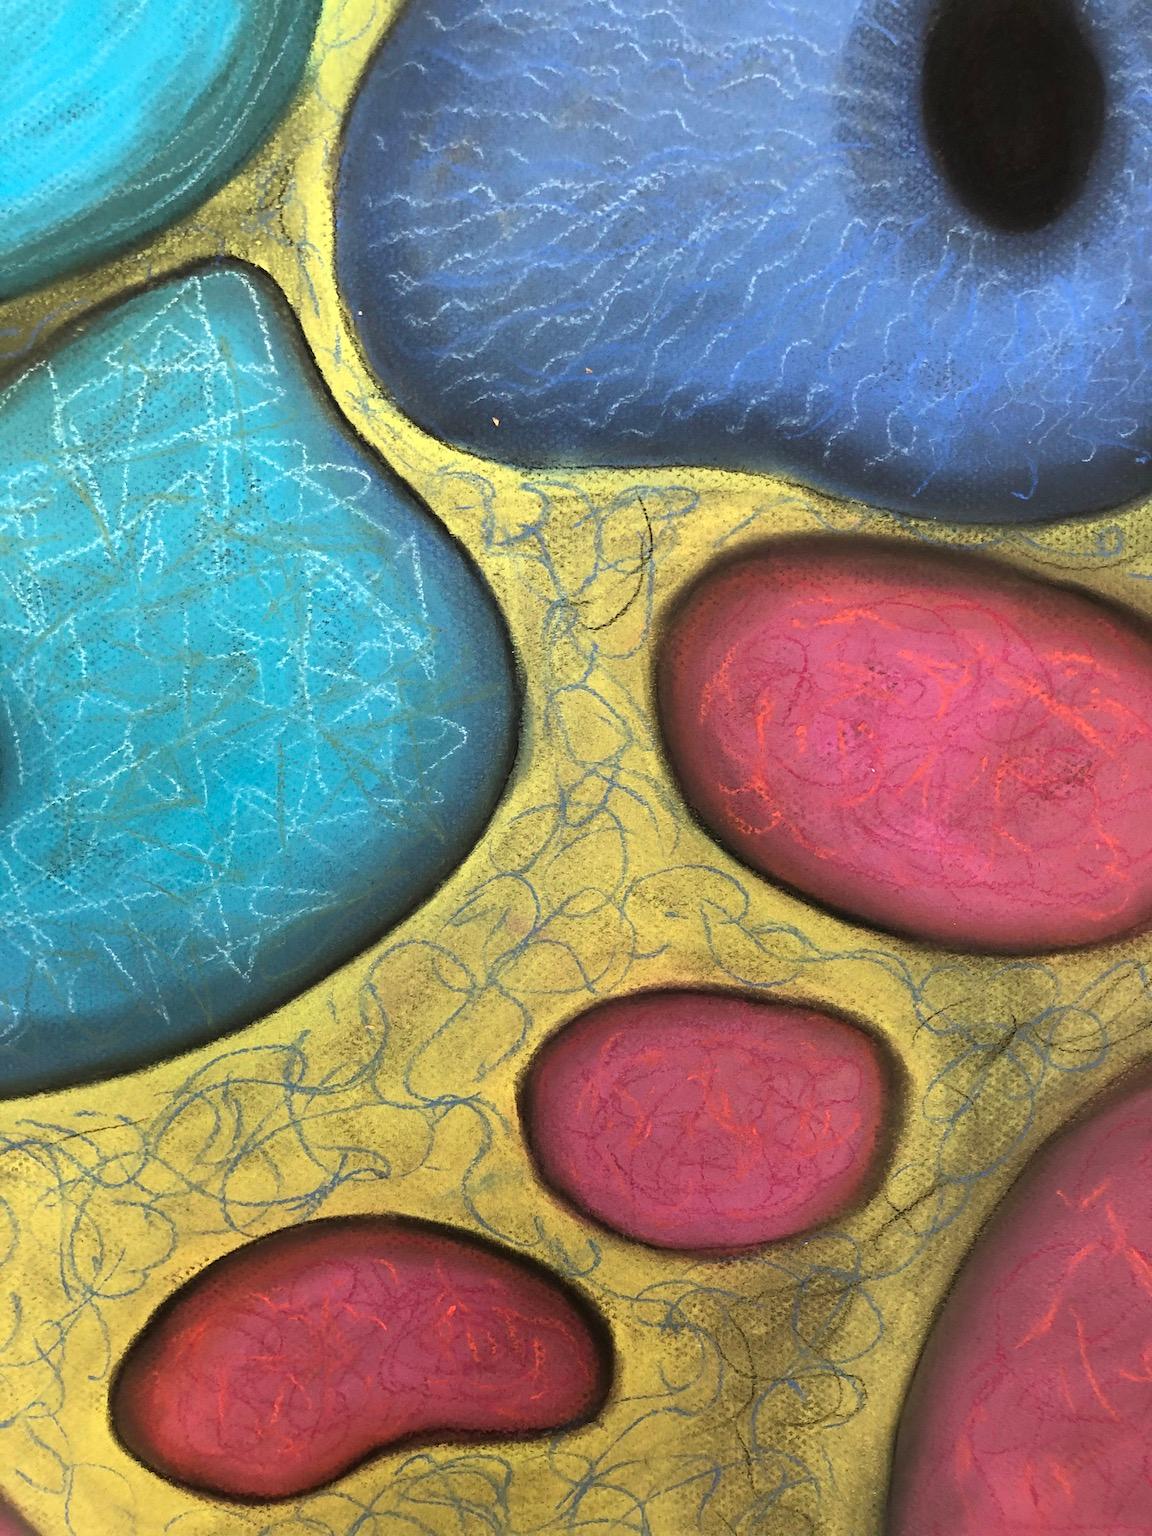 „Macrovision 6““, Pastell, mikroskopisch, Landschaft, Blau, Rosa, Gelb, Grün – Painting von Kay Hartung